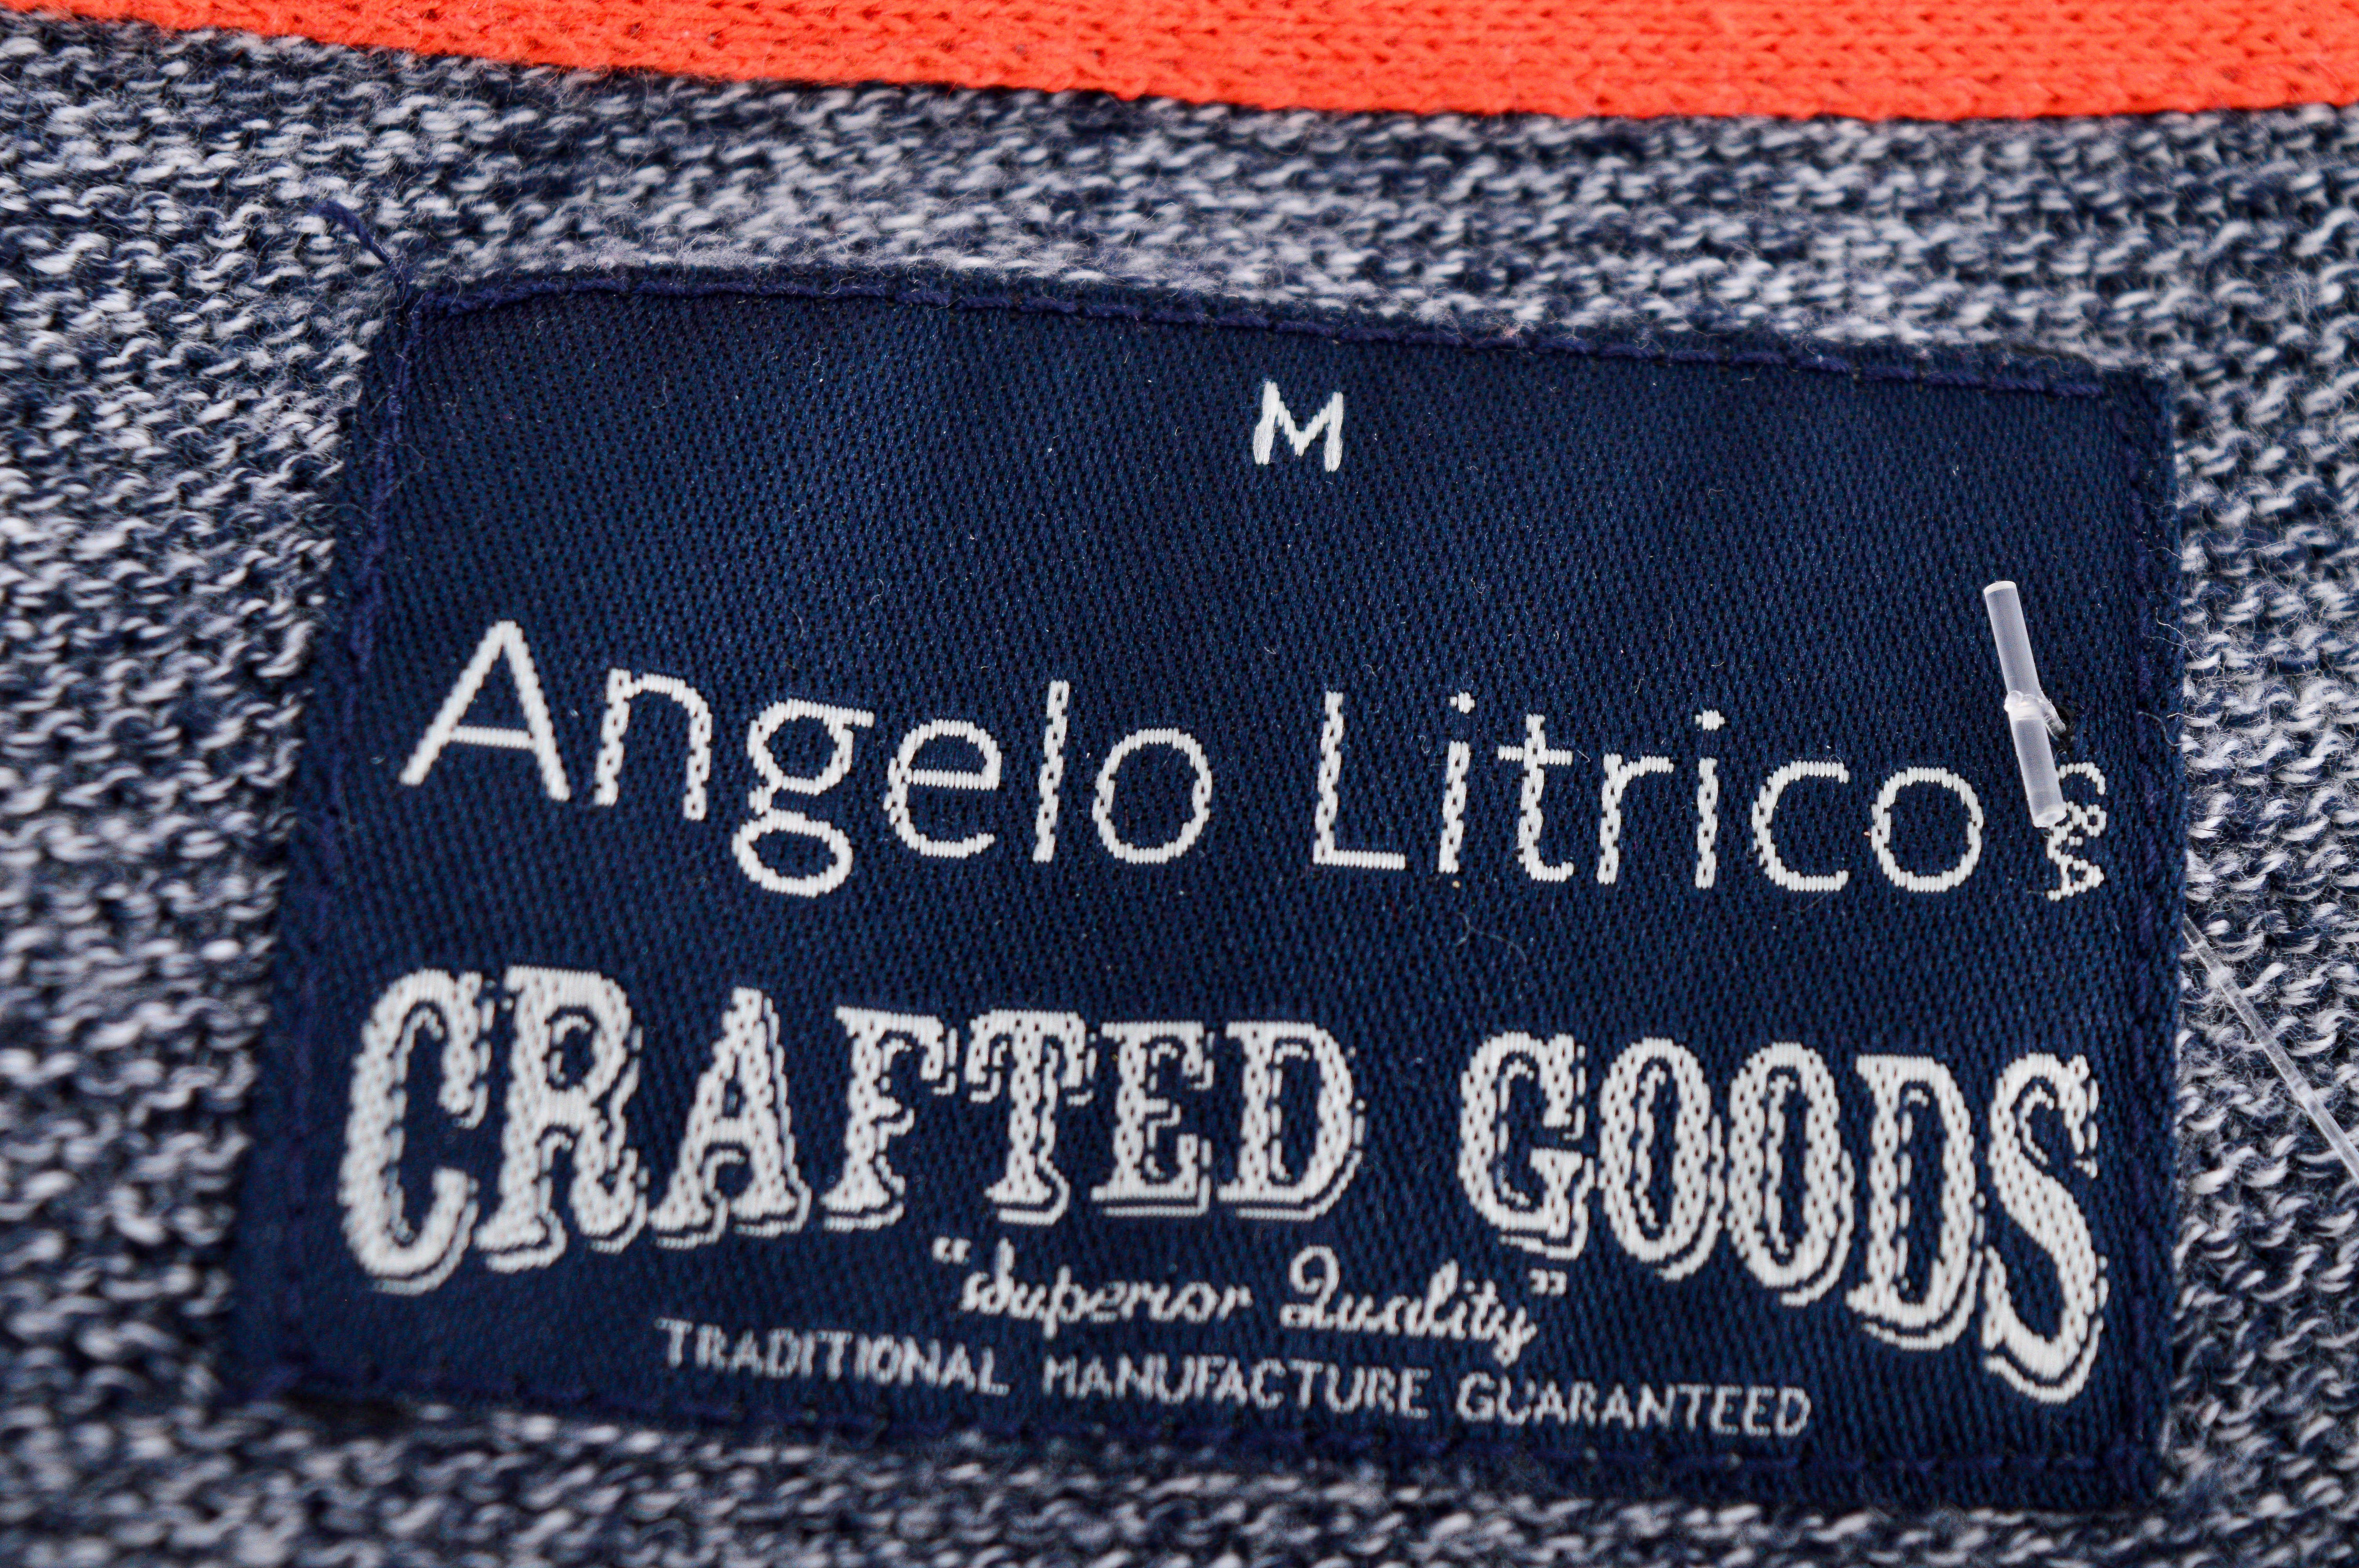 Мъжки пуловер - Angelo Litrico - 2